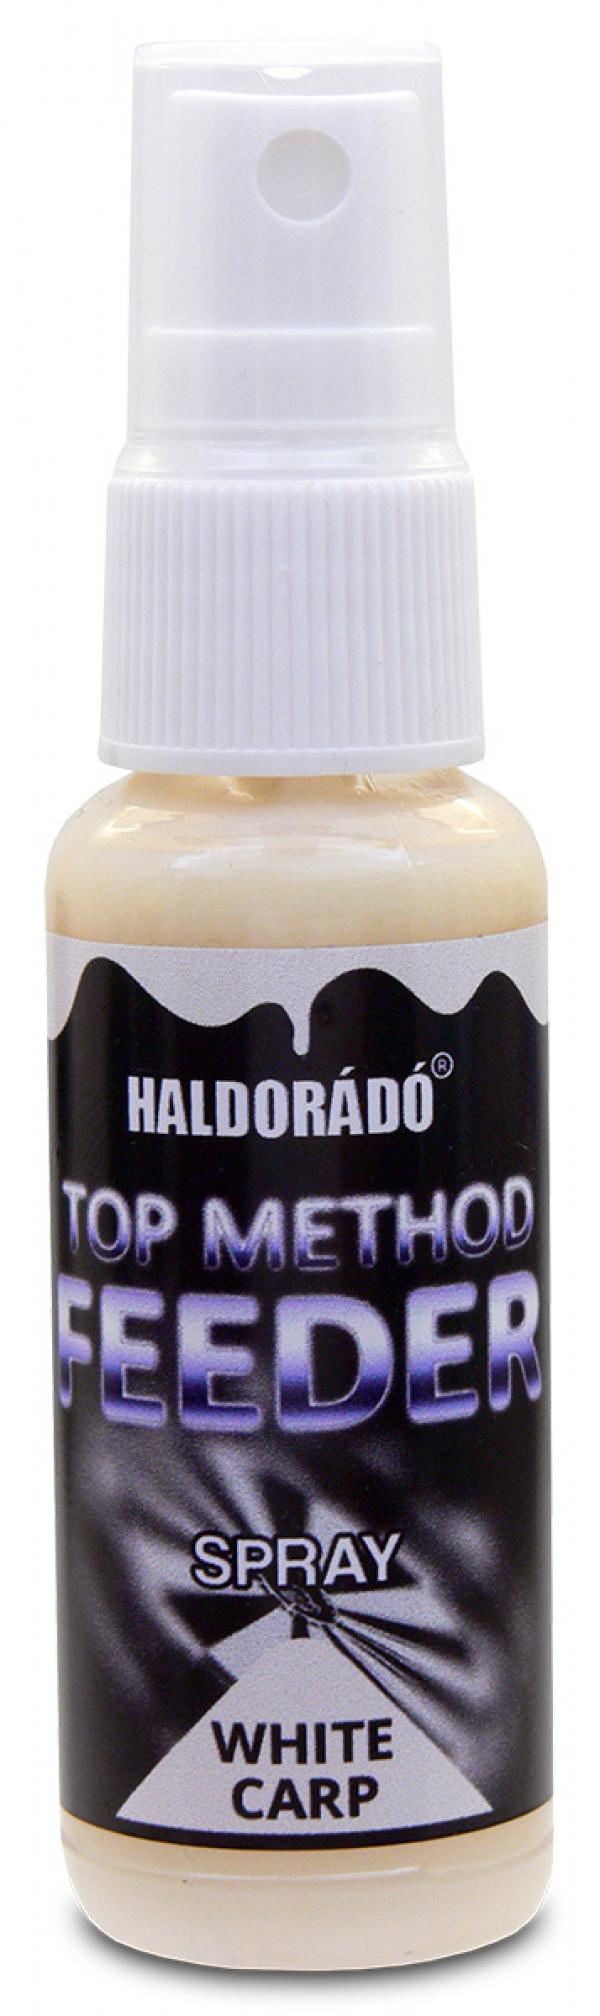 HALDORÁDÓ Top Method Feeder Activator Spray - WHITE CARP